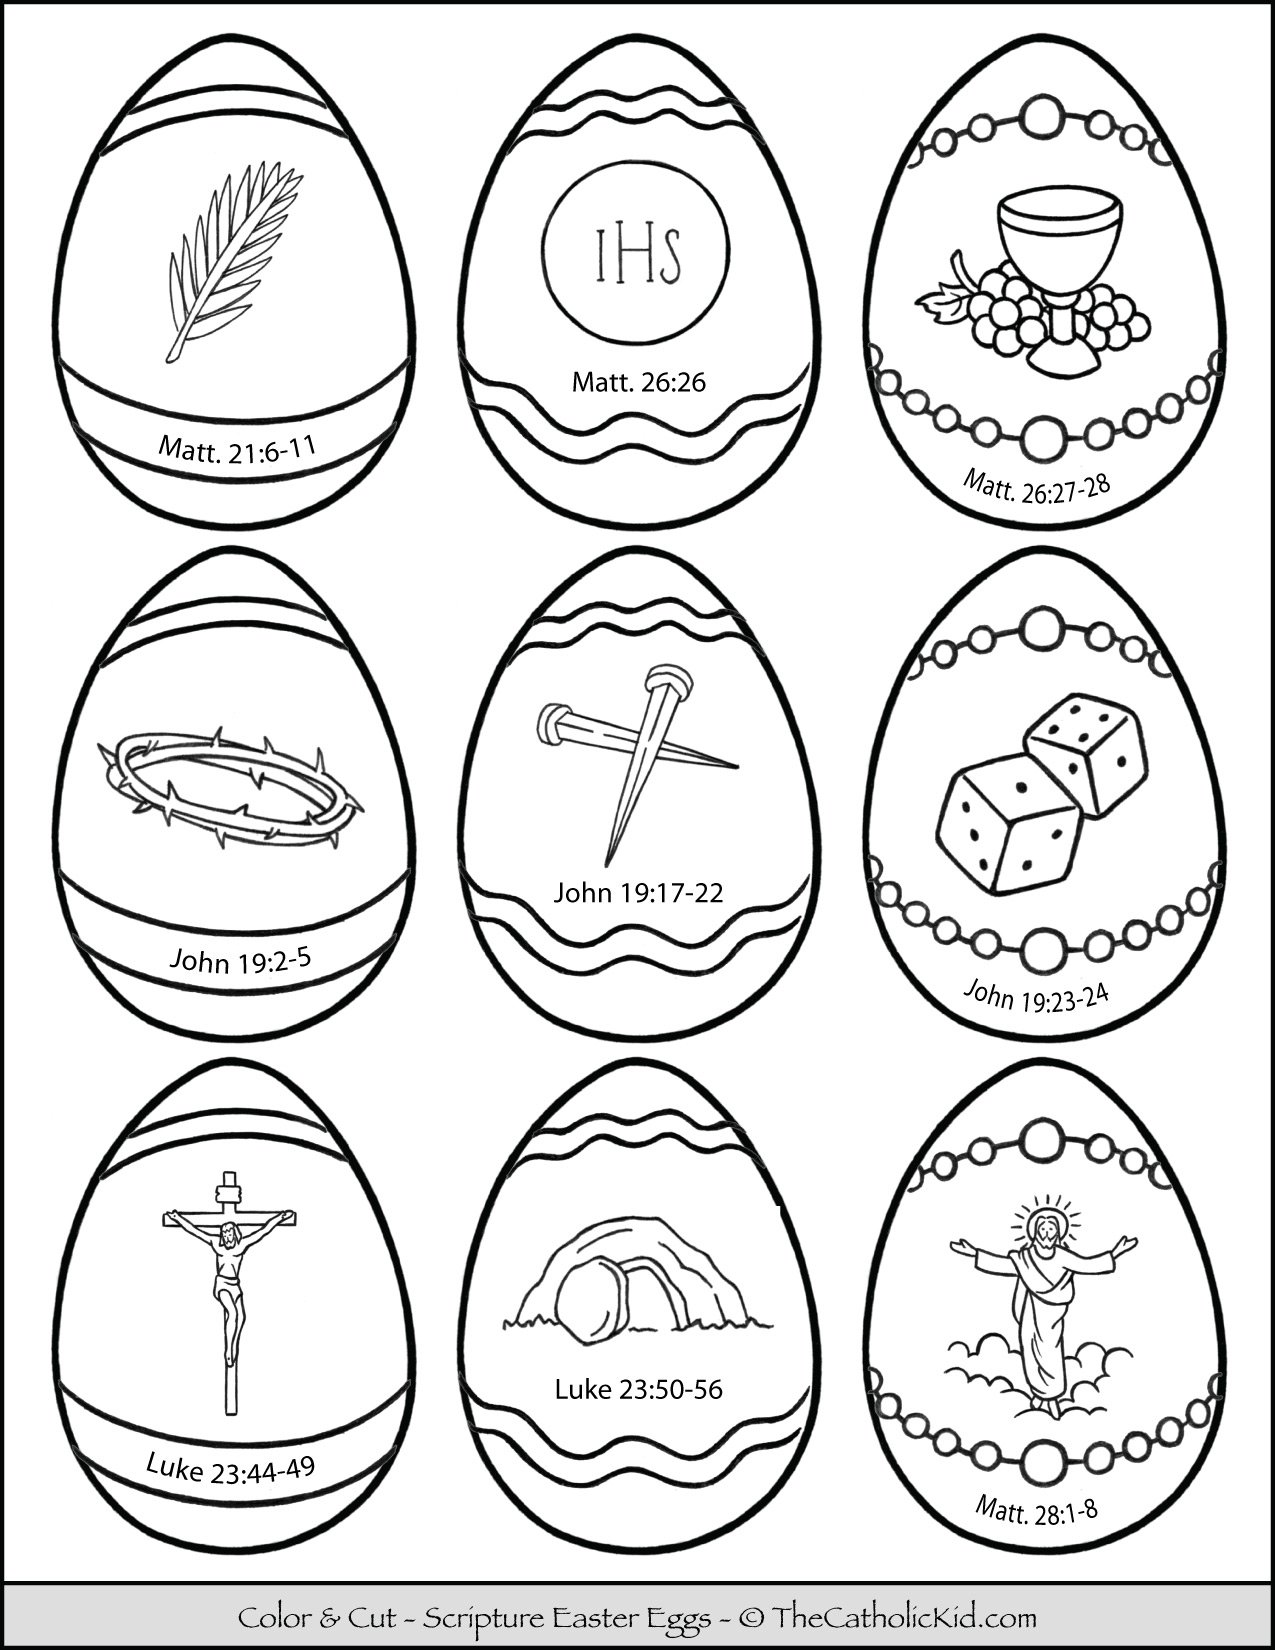 Easter egg scriptures